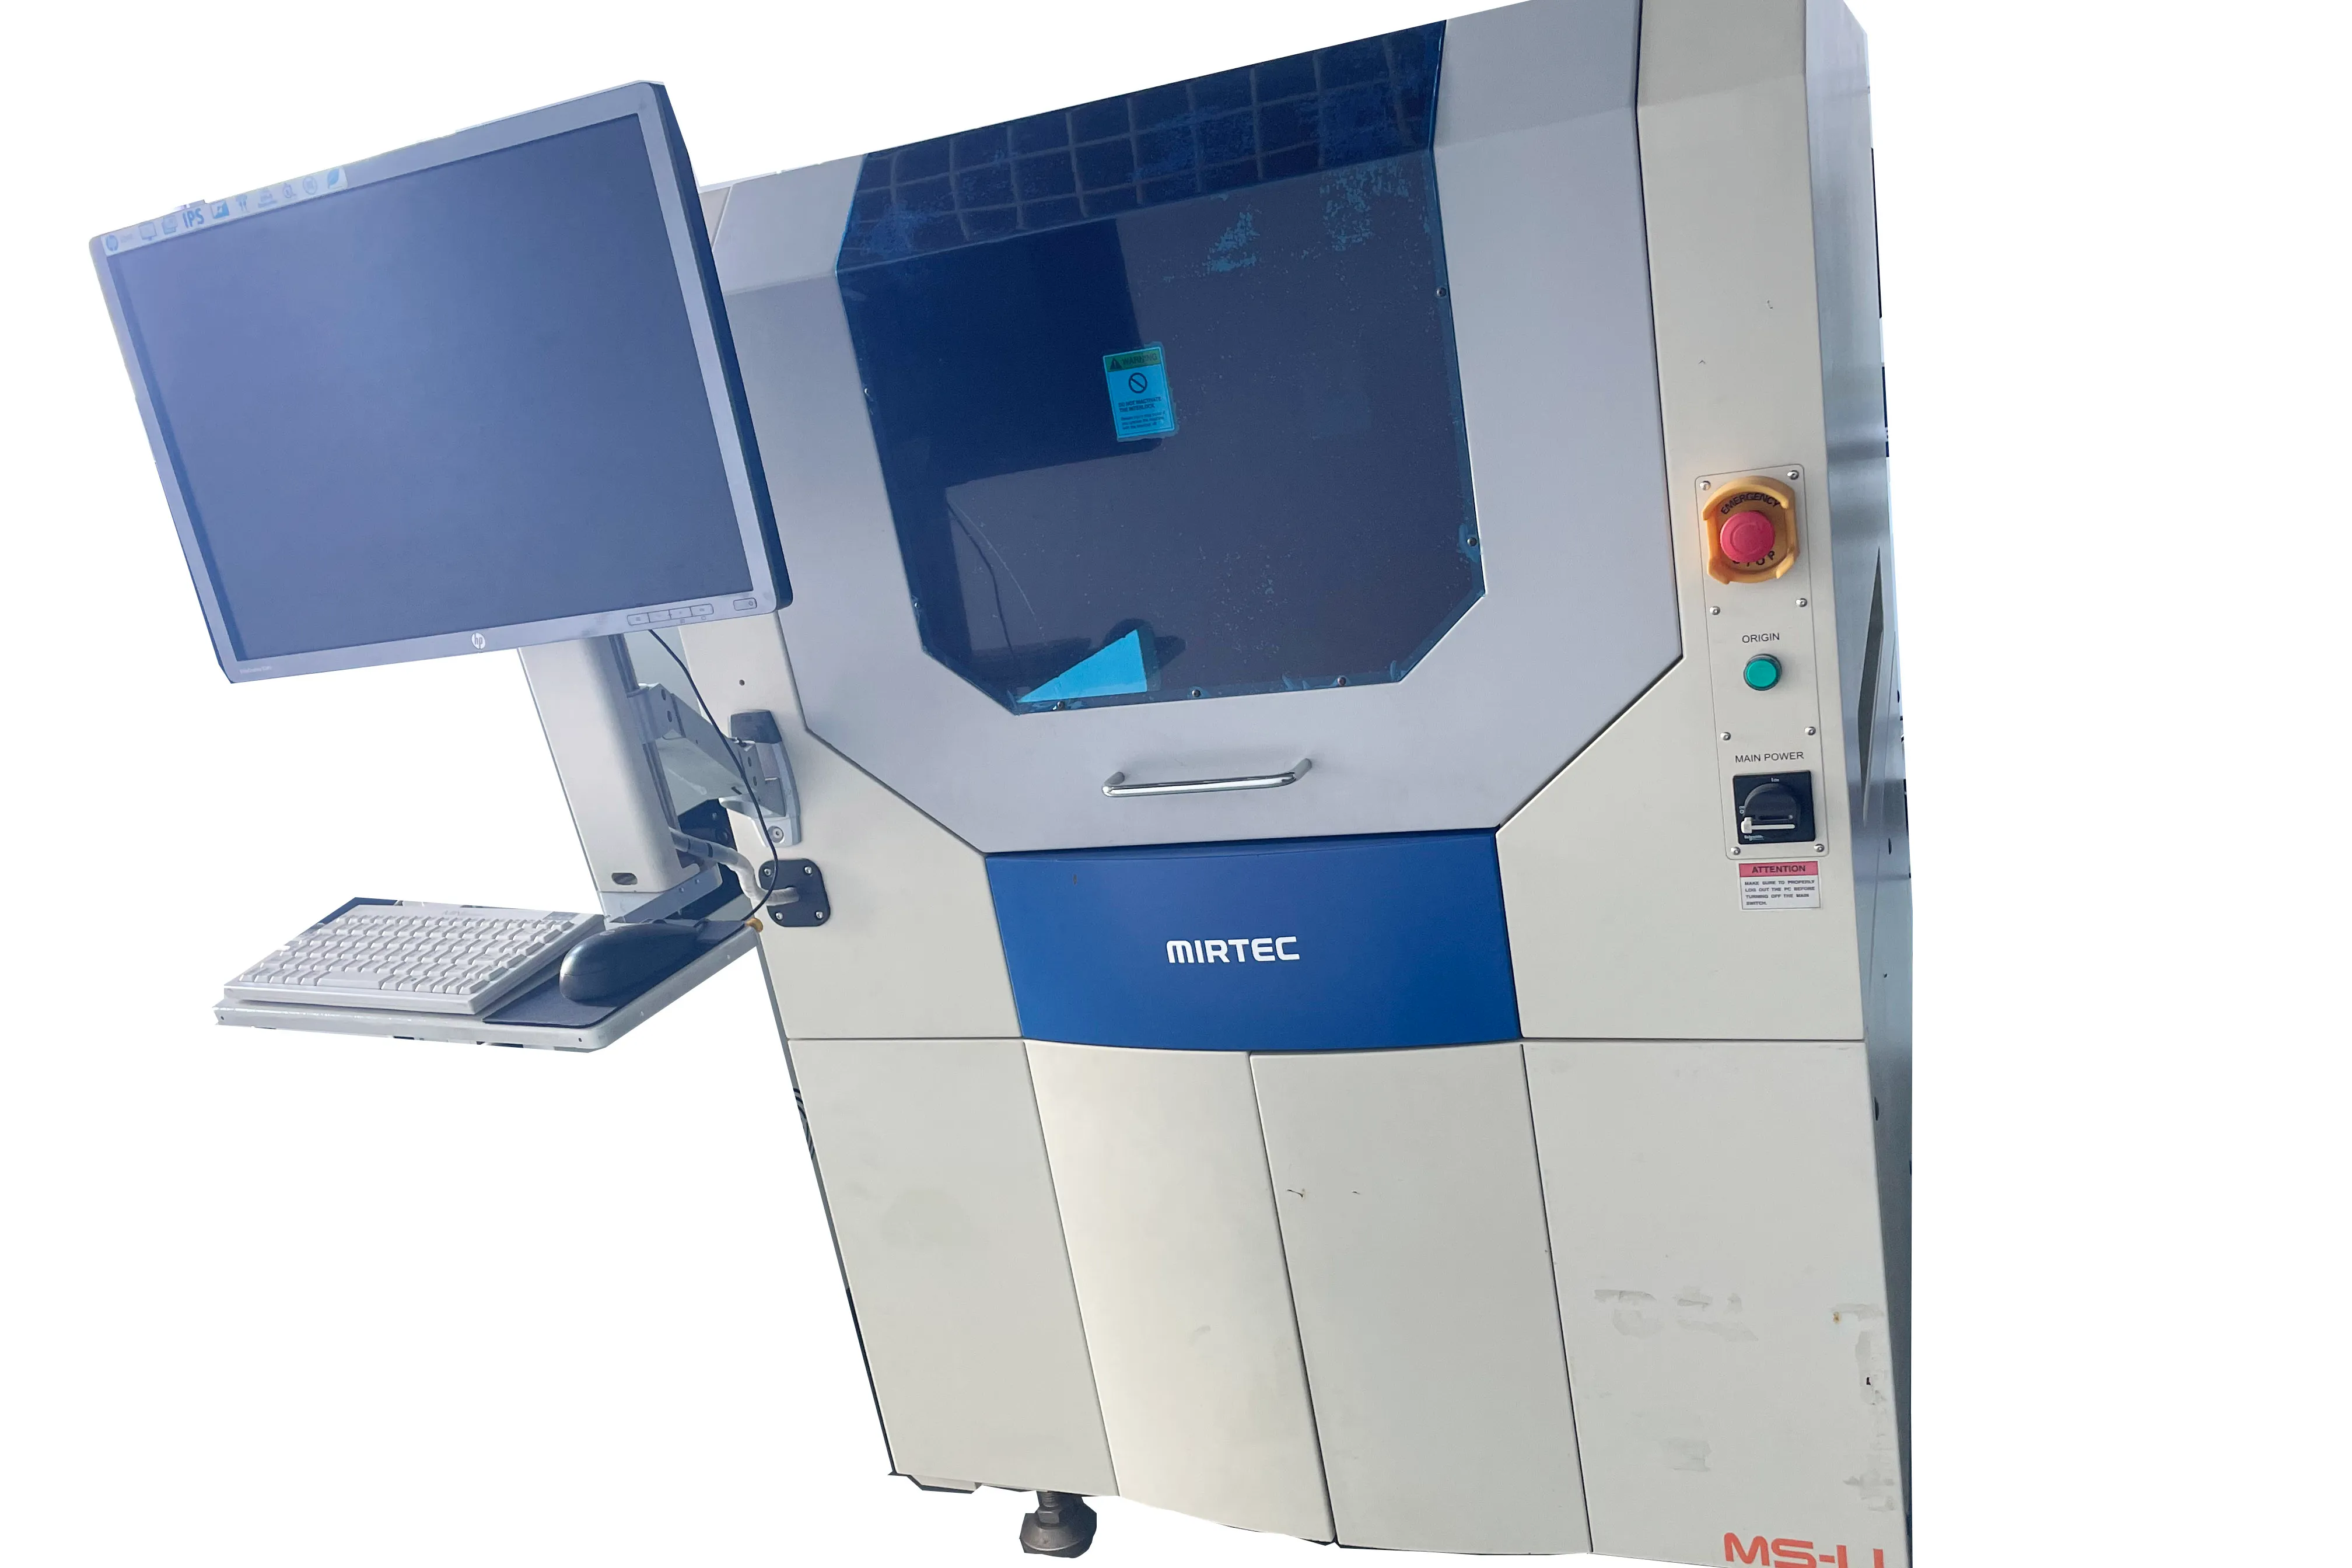 Unsere gebrauchten SMT-Drucker sind günstig im Preis und garantiert in der Qualität